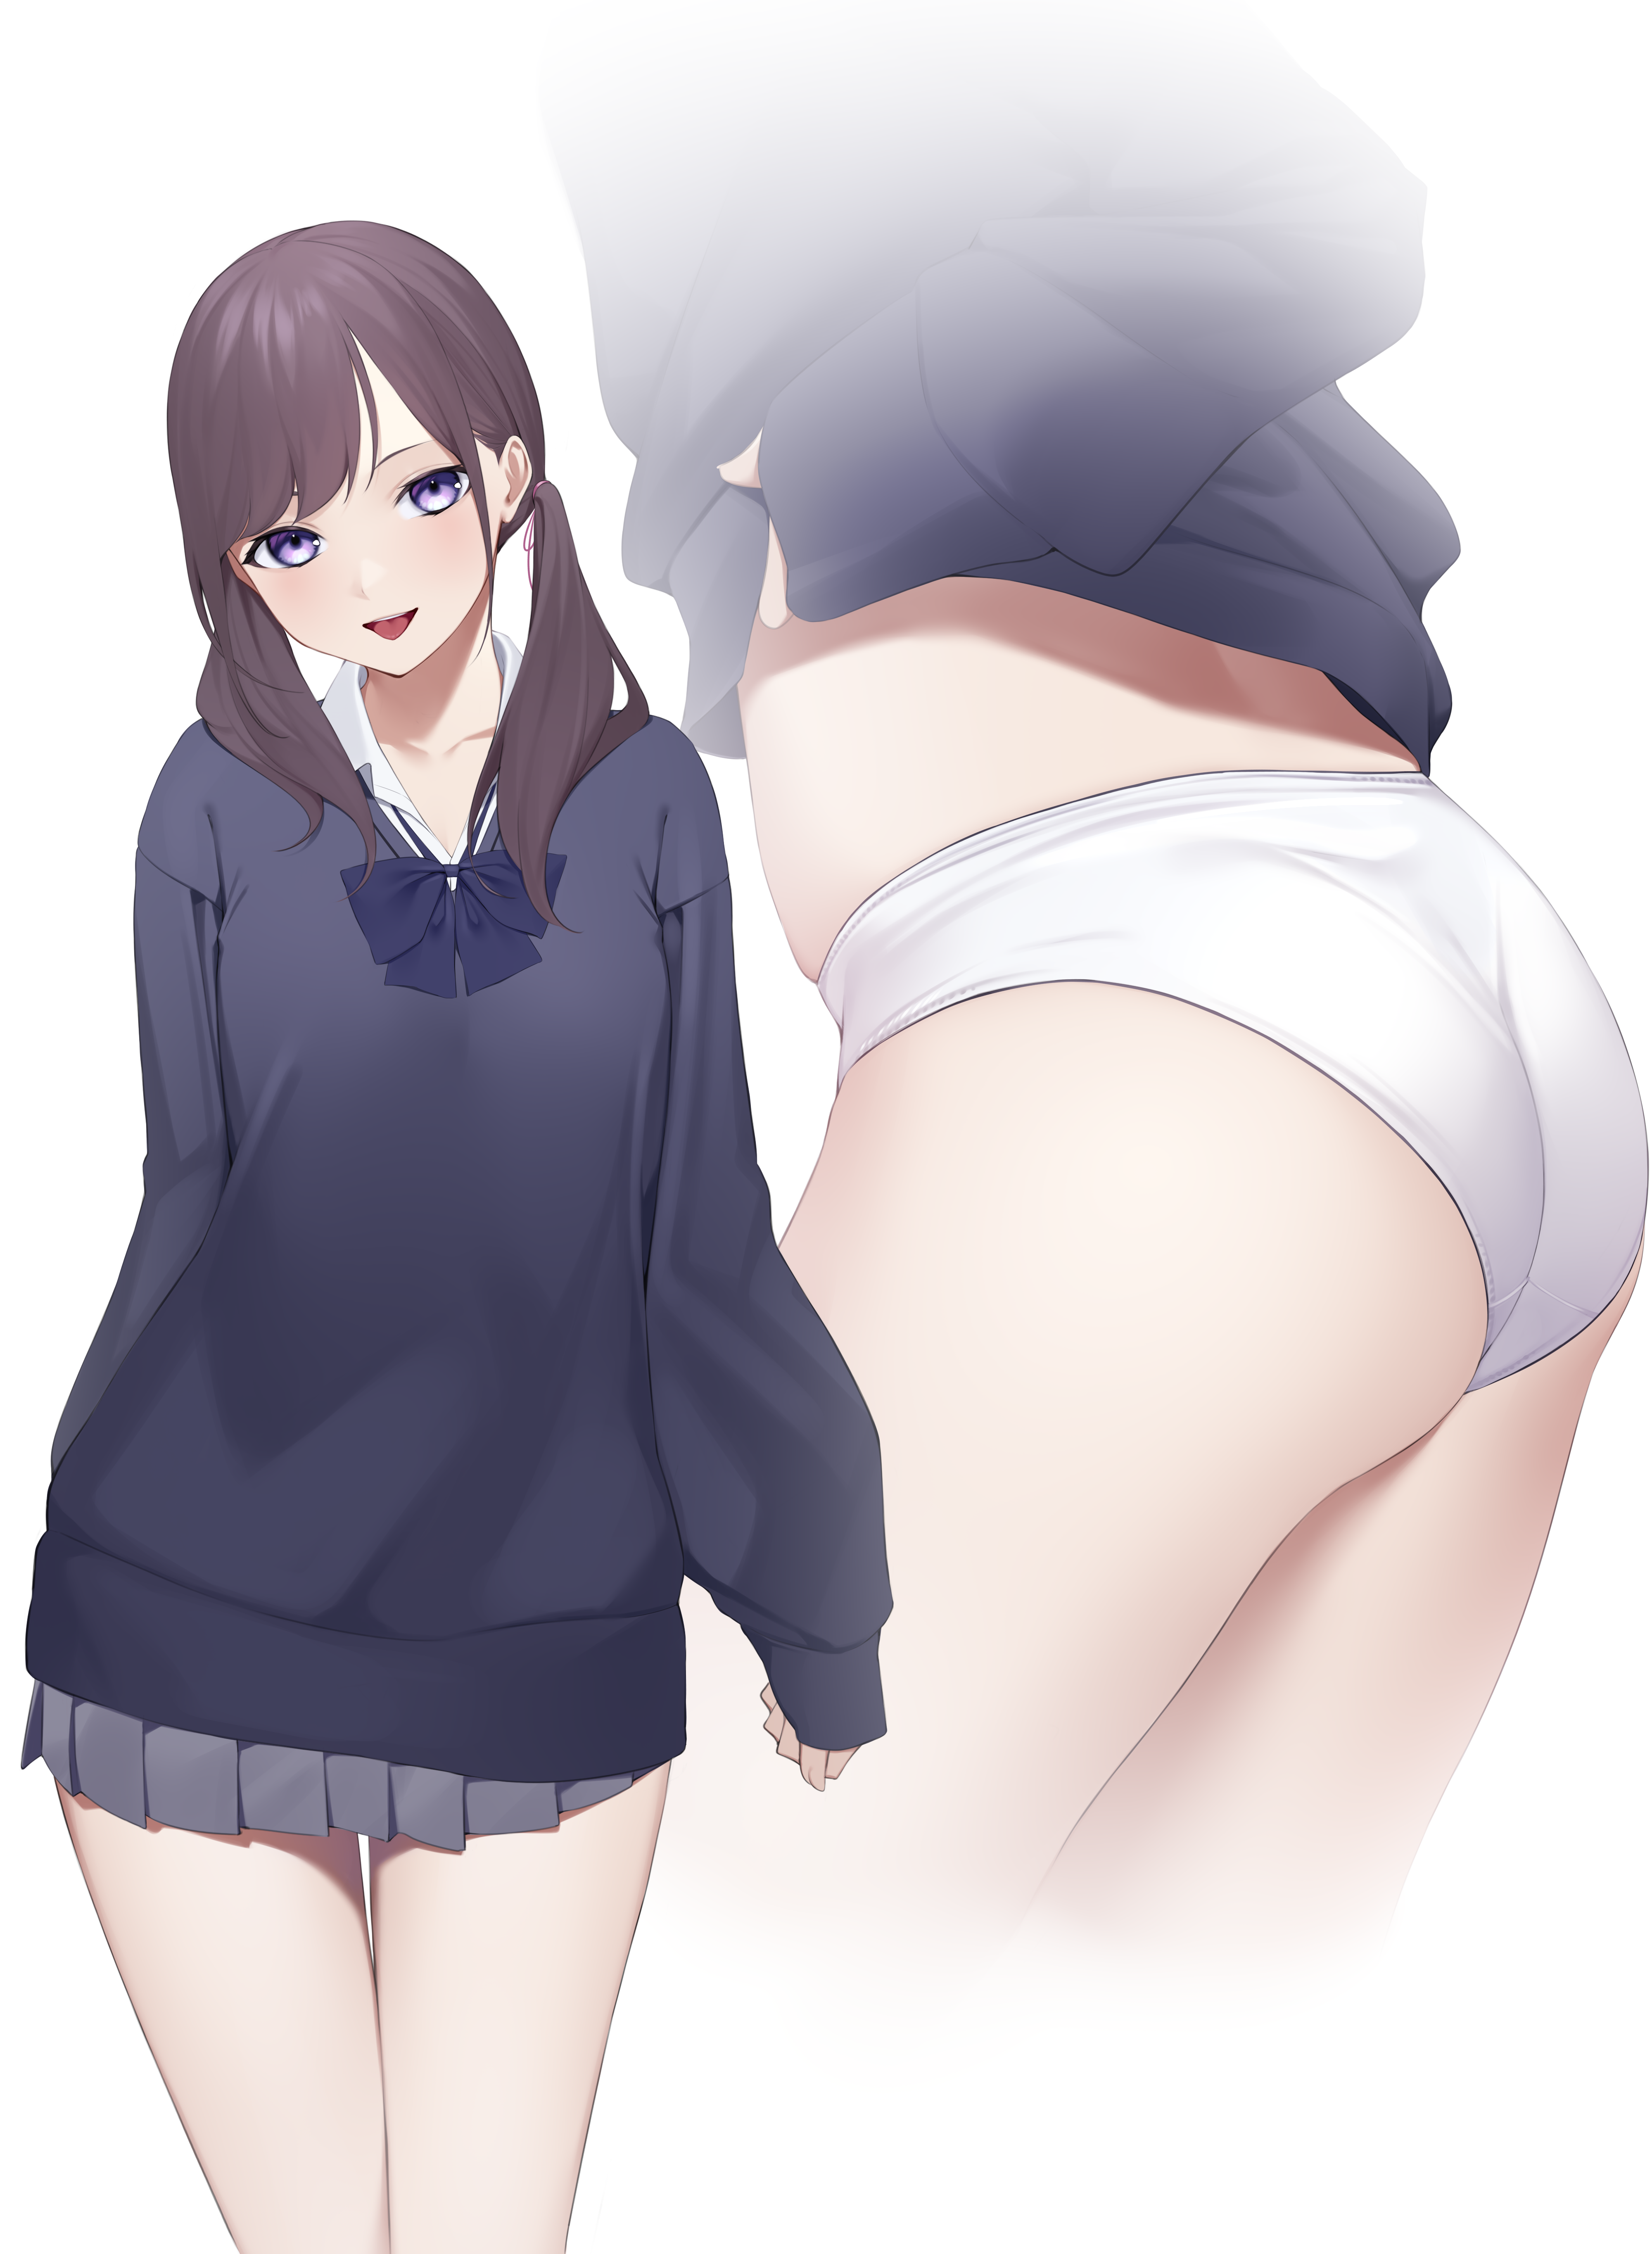 Anime 4000x5457 Kuen anime girls ass panties lifting skirt school uniform